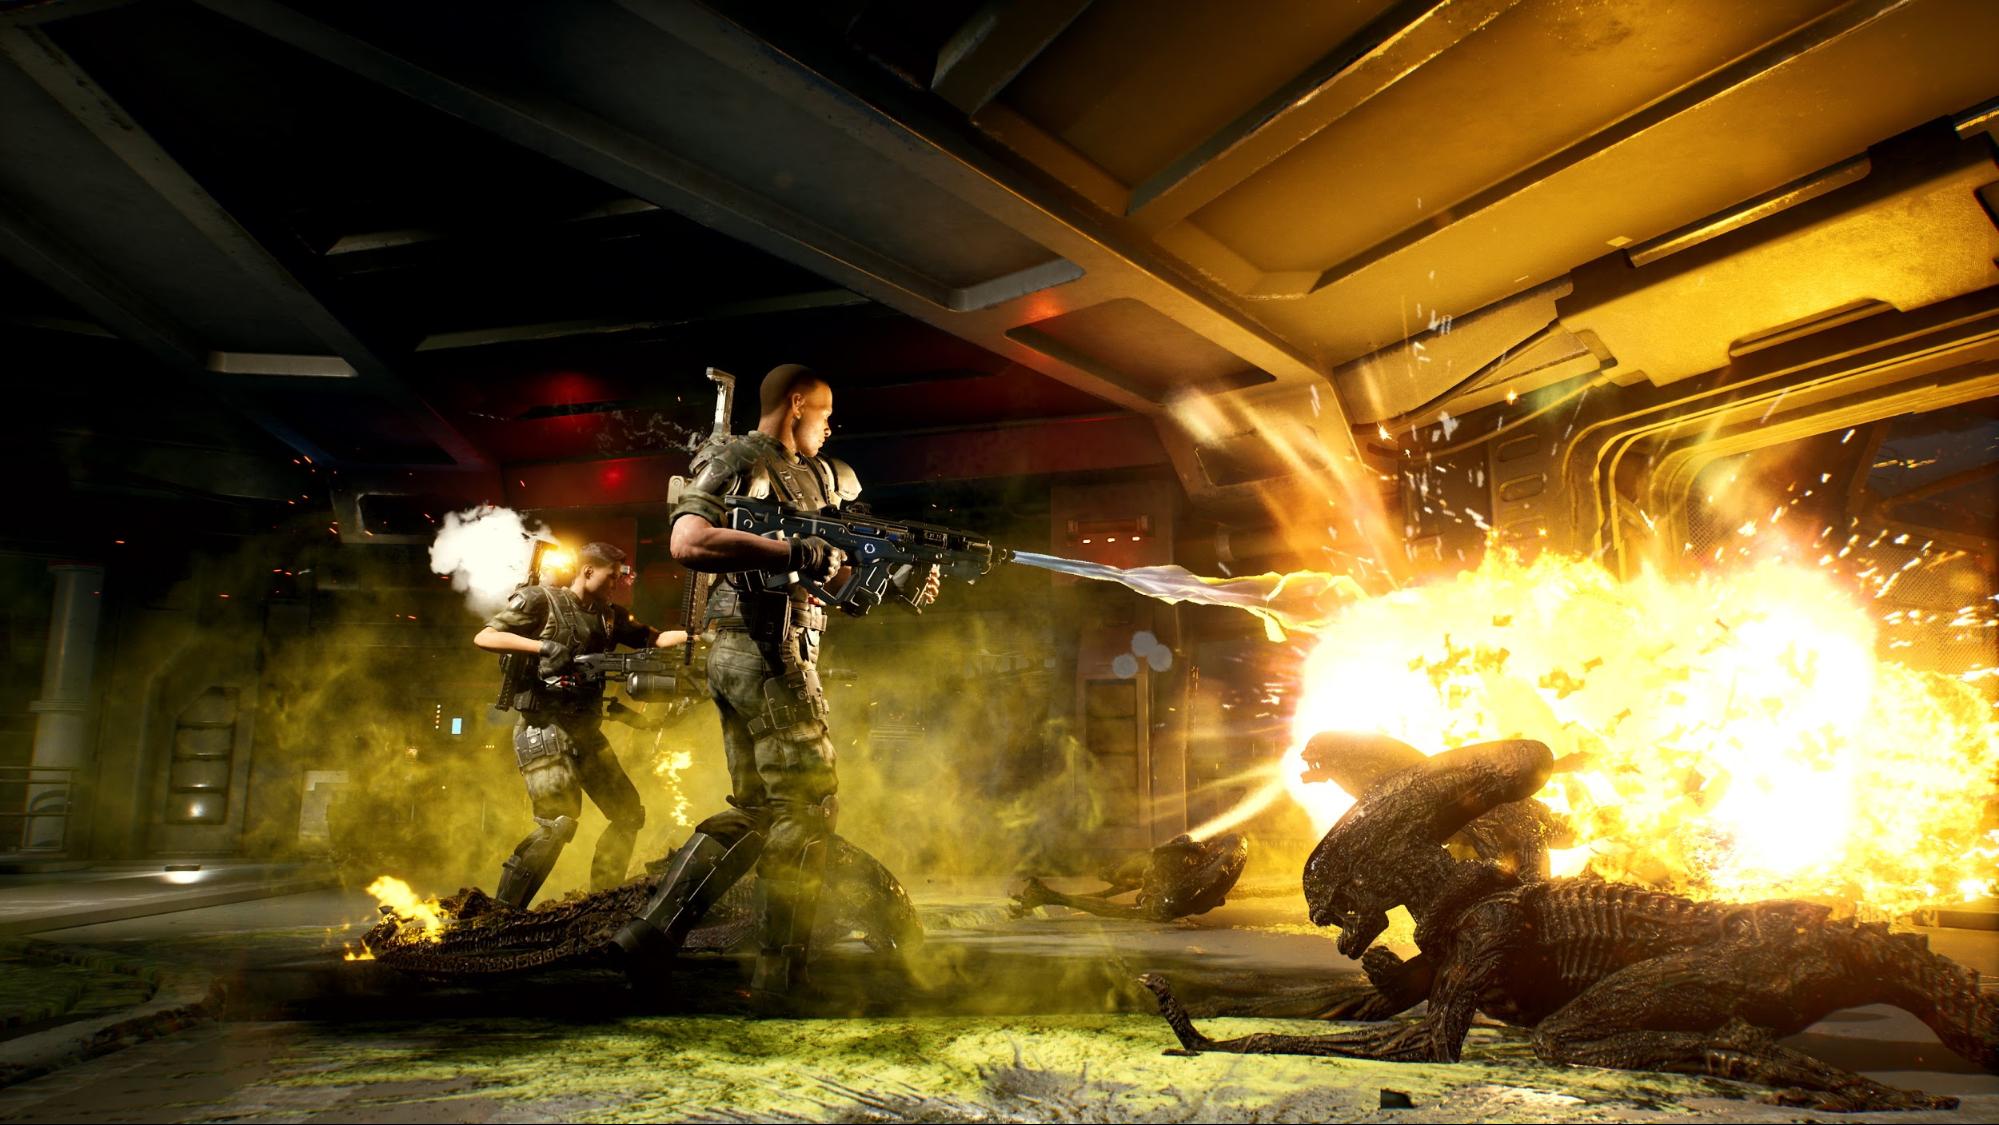 映画『エイリアン』を題材にした協力アクションゲーム『Aliens: Fireteam』が正式発表。3人で協力して20種類以上の無数の敵と戦え_001